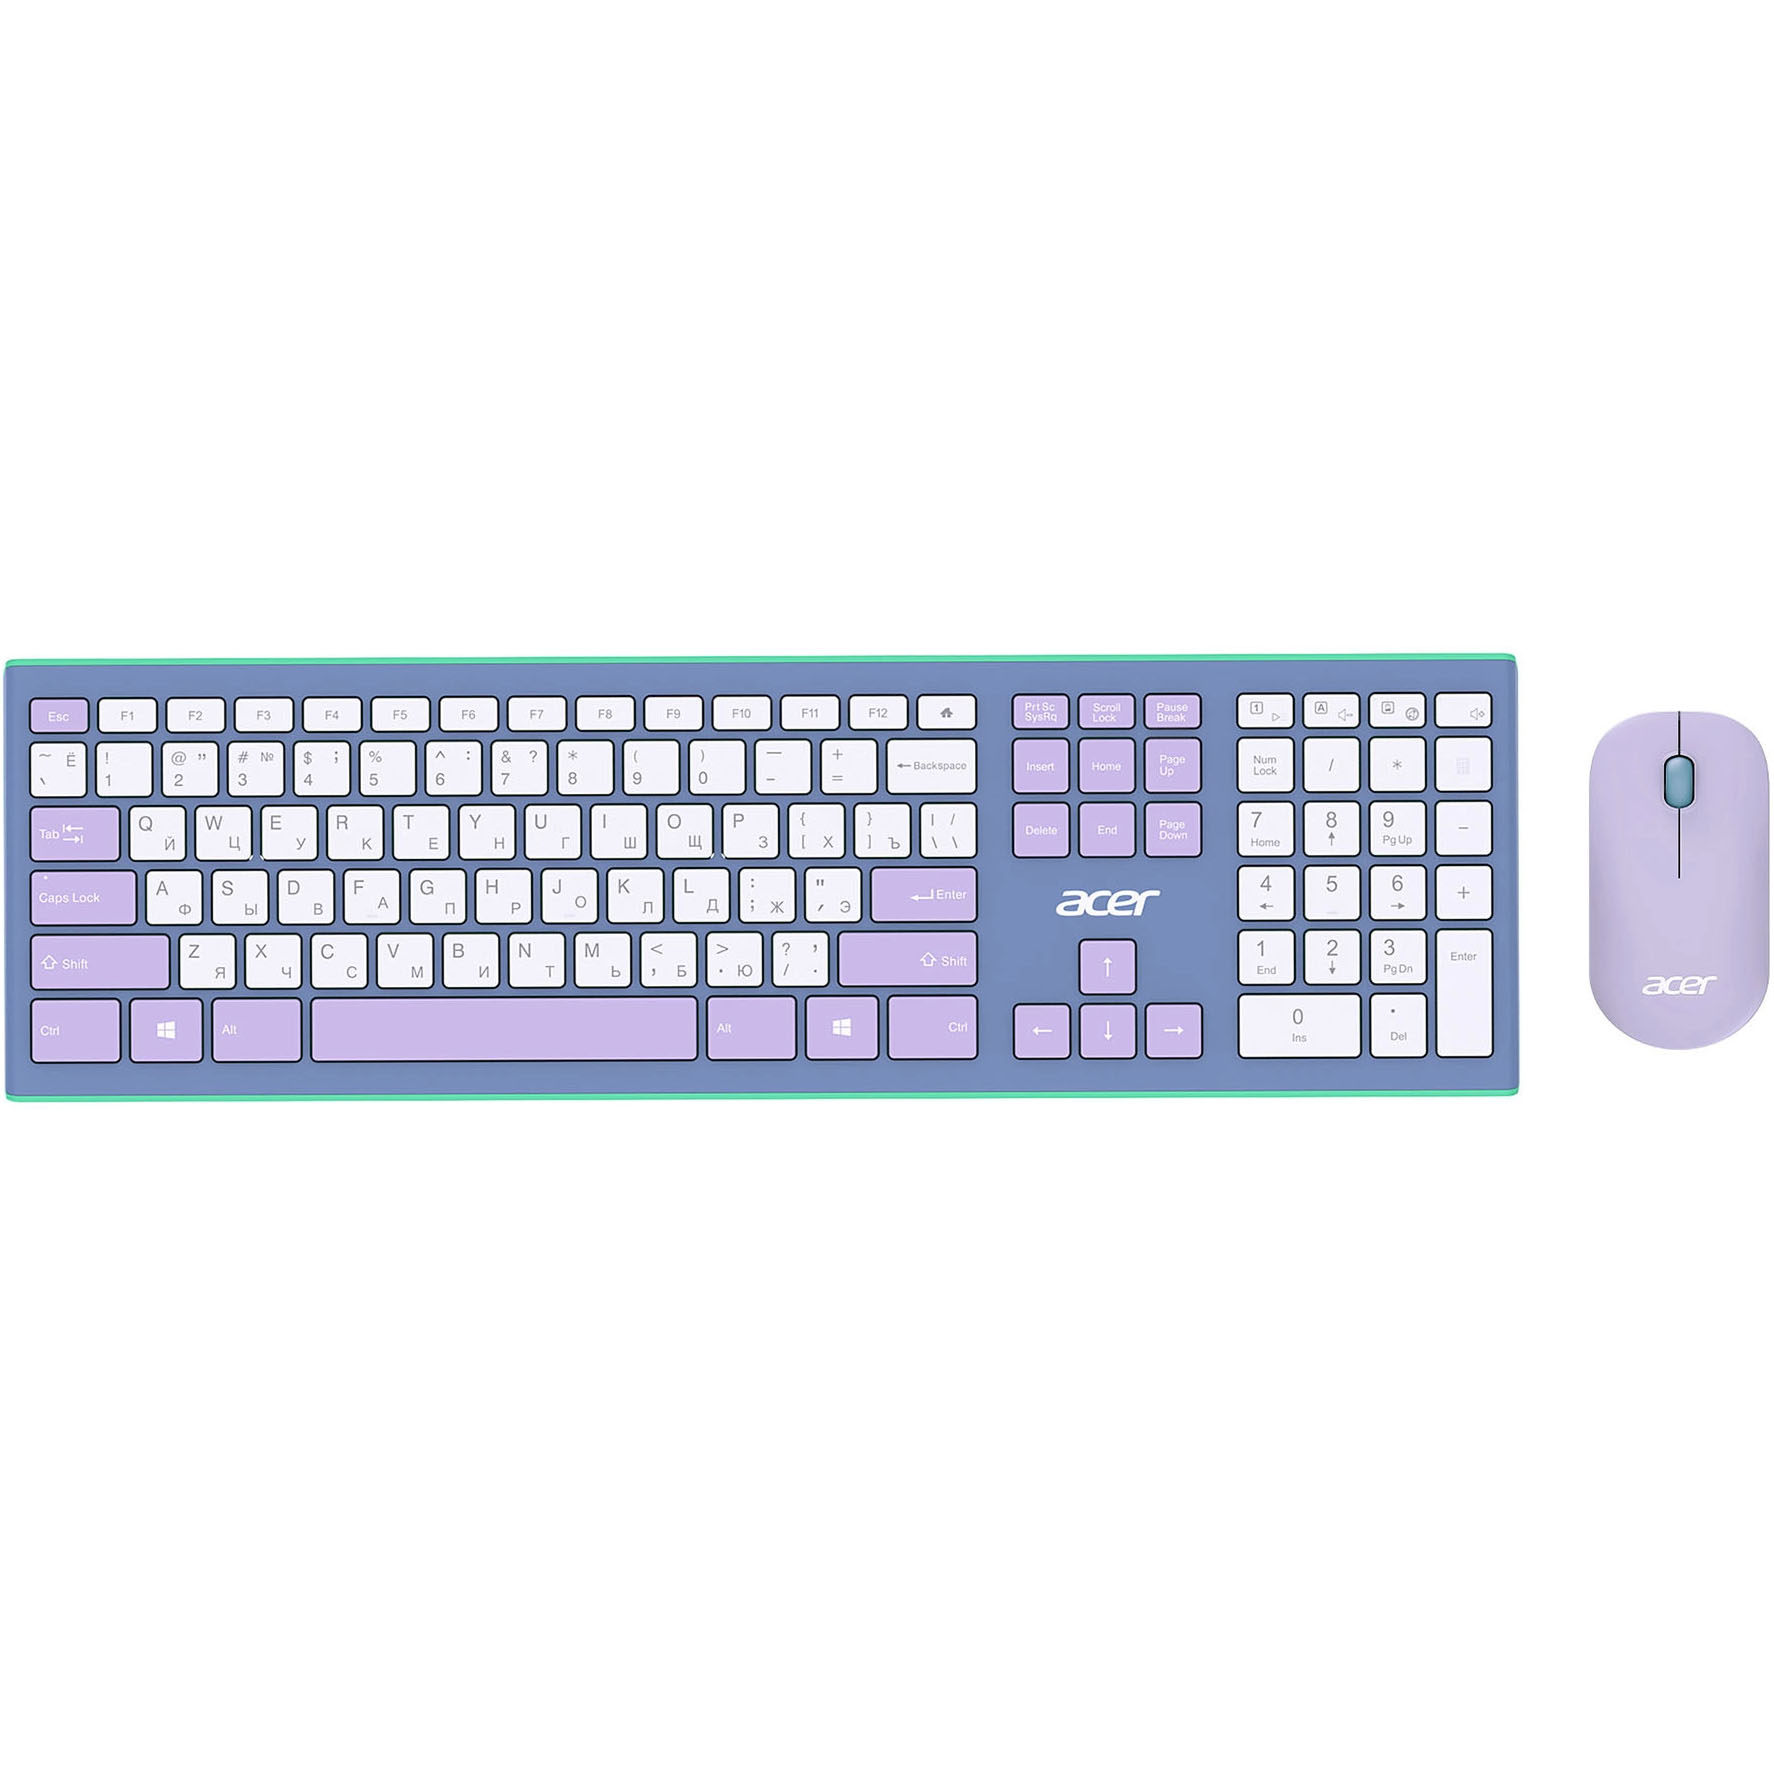 Комплект клавиатуры и мыши Acer OCC200 зеленый, фиолетовый клавиатура мышь acer occ200 бежевый коричневый zl accee 004